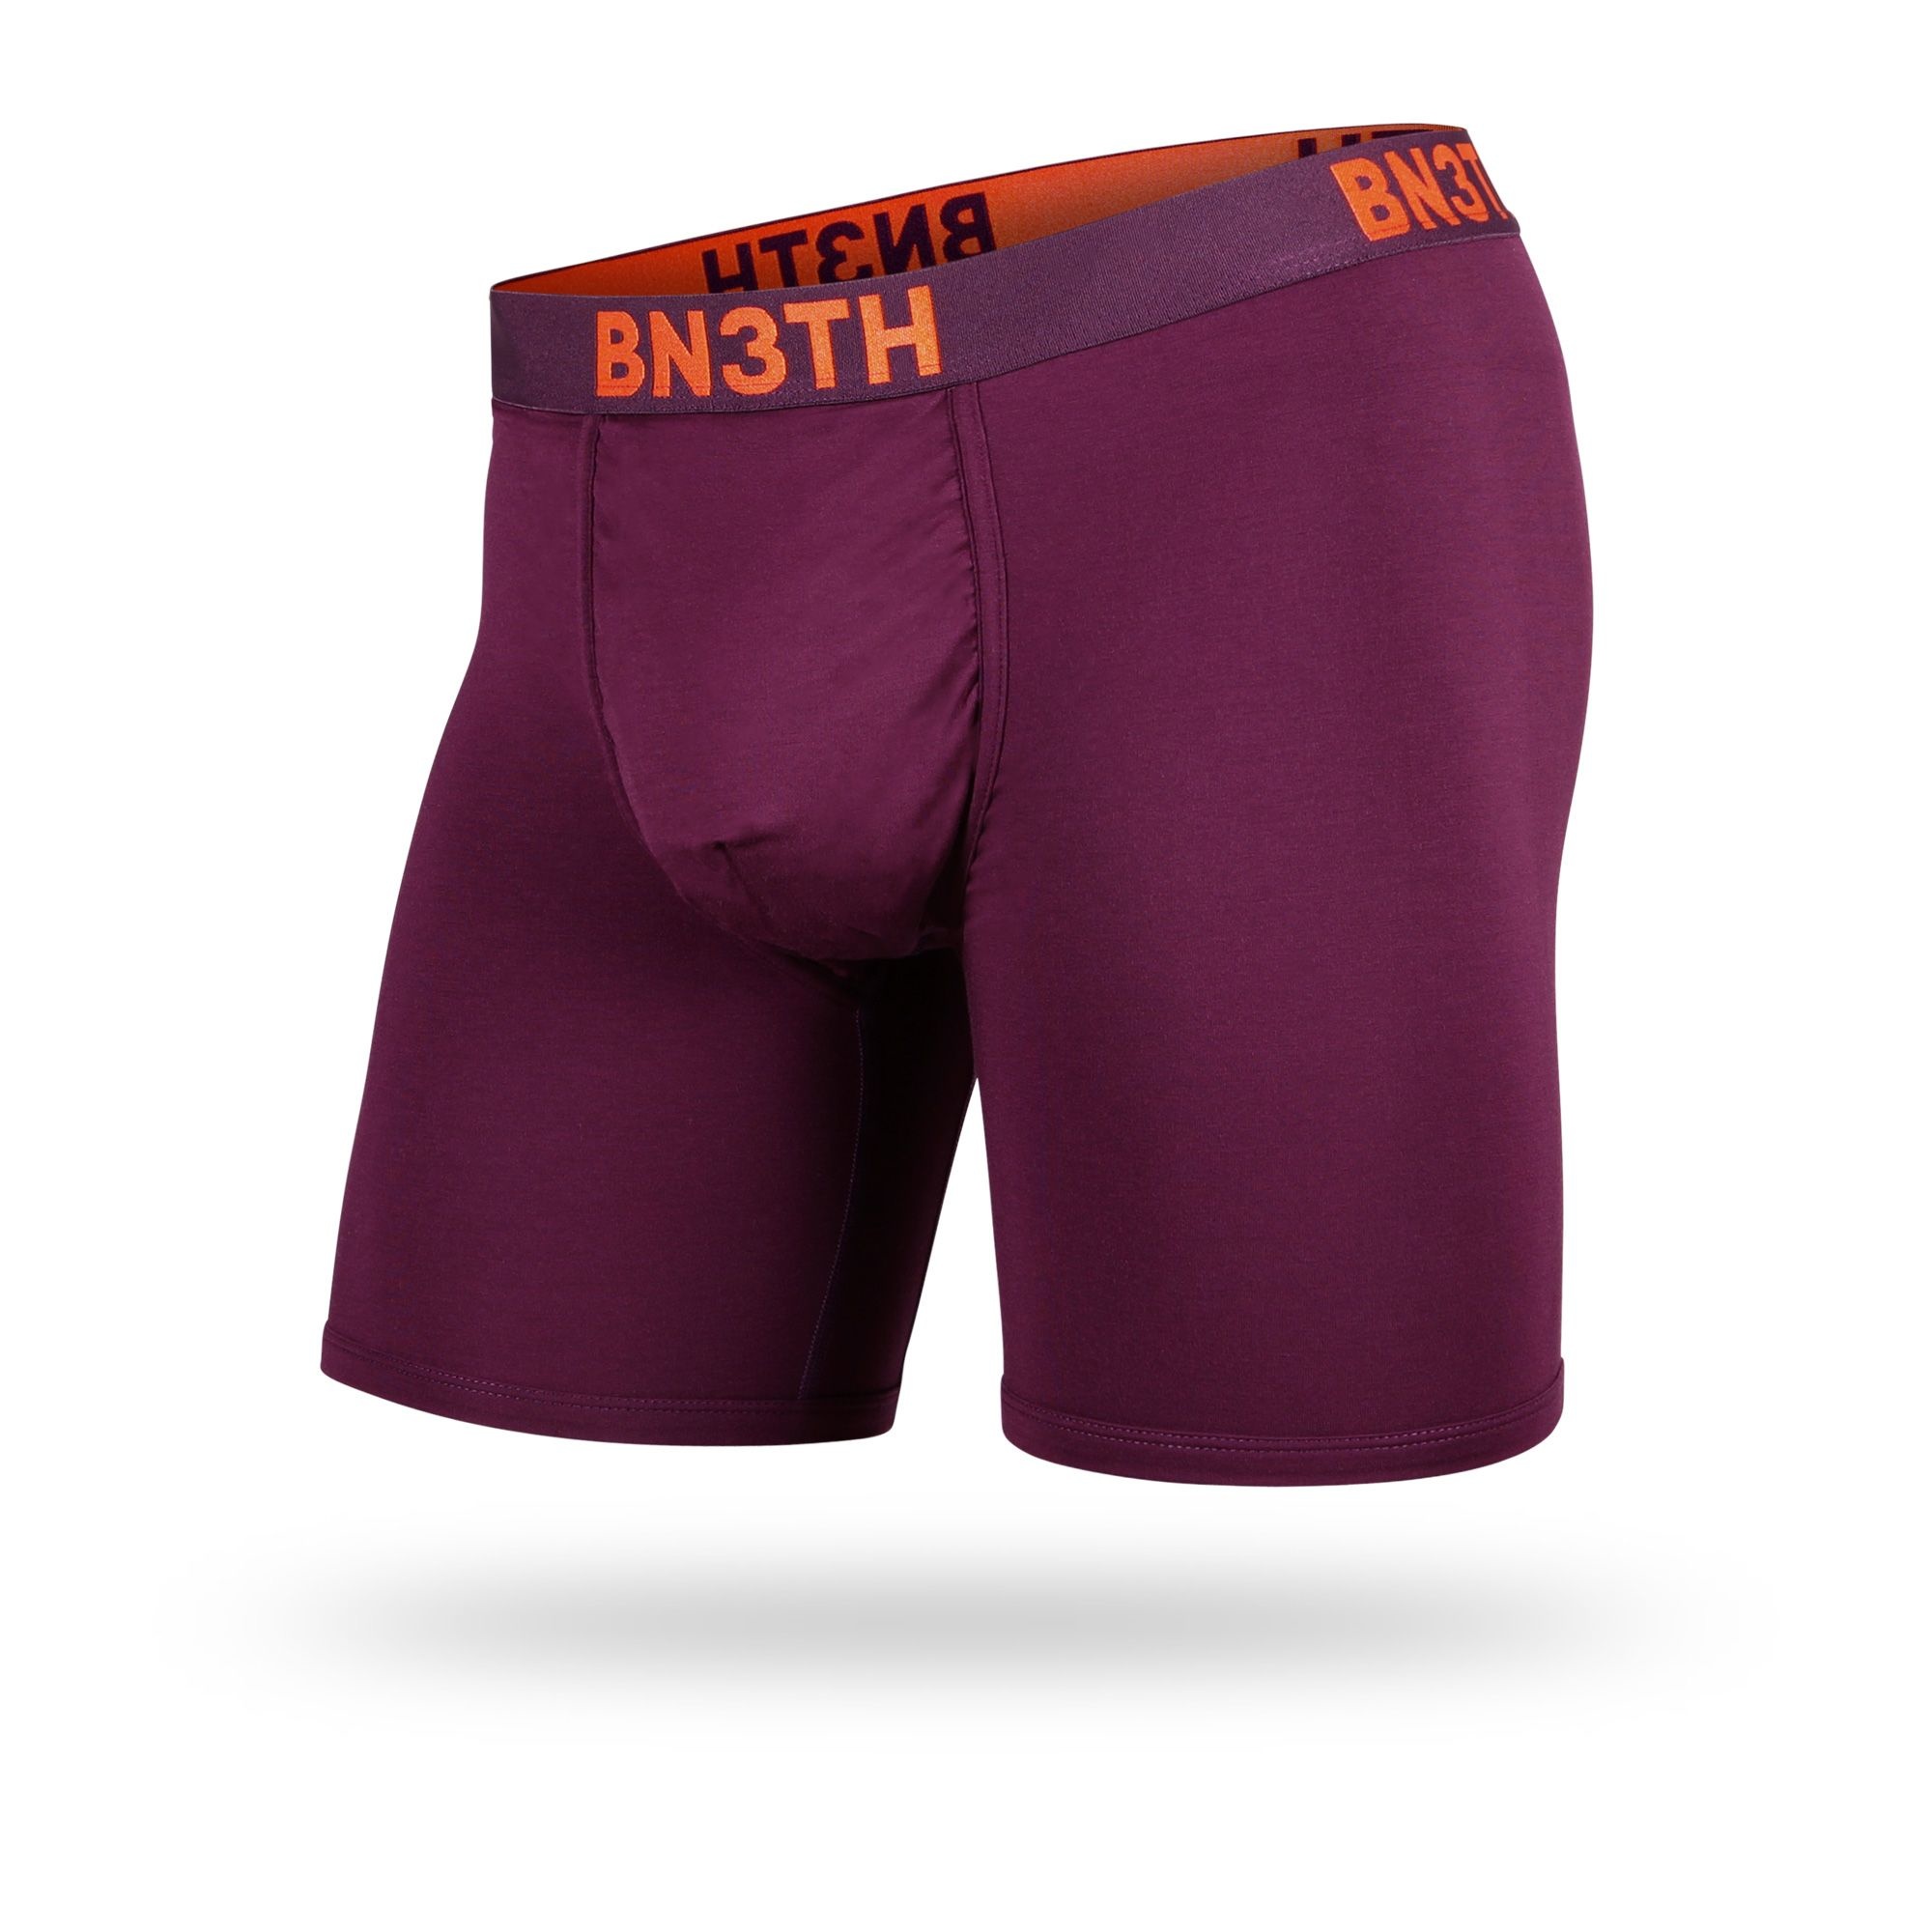 BN3TH Classic 6.5 Boxer Brief 2 Pack - Fog/Bananas Fog – Purple